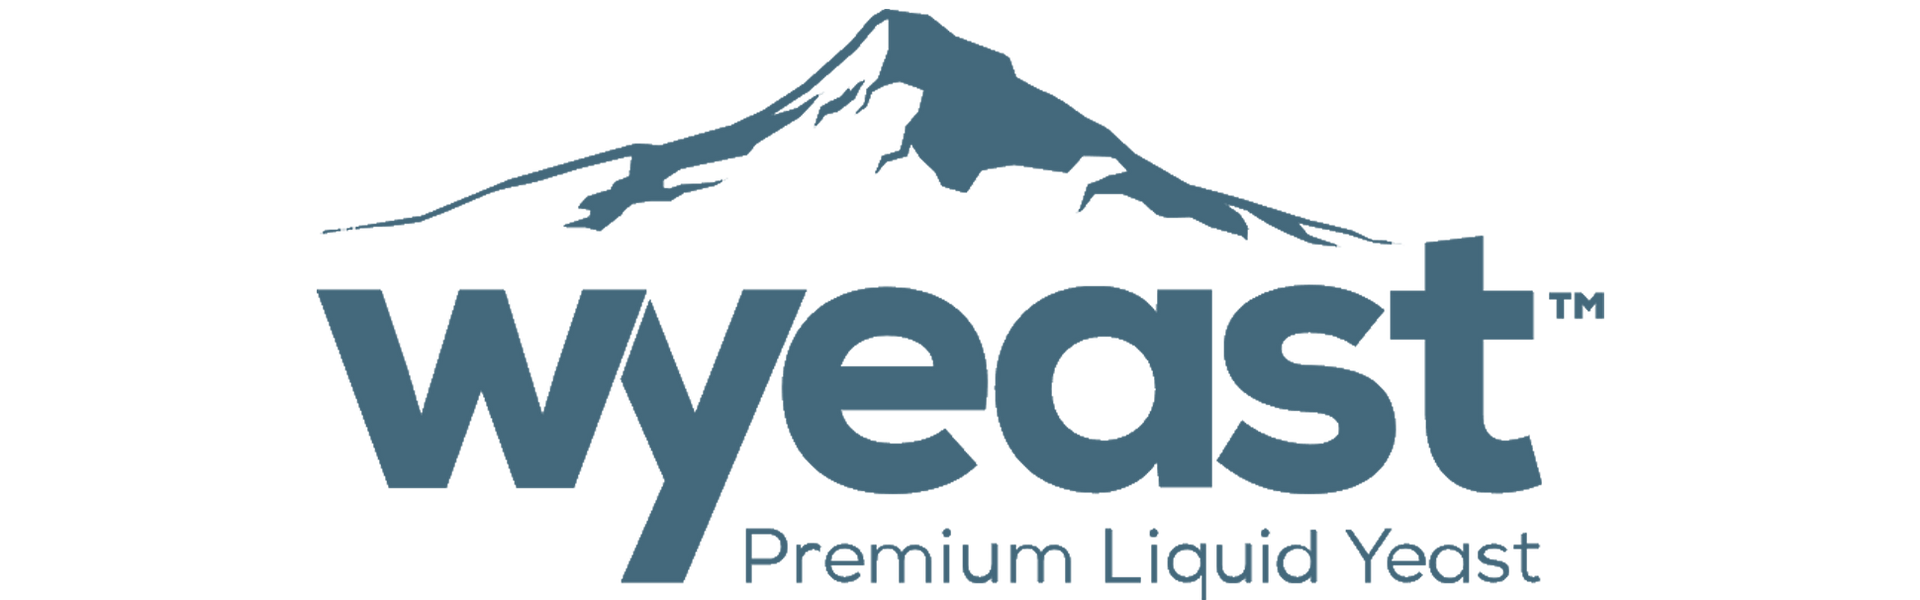 Wyeast Premium Liquid Yeast